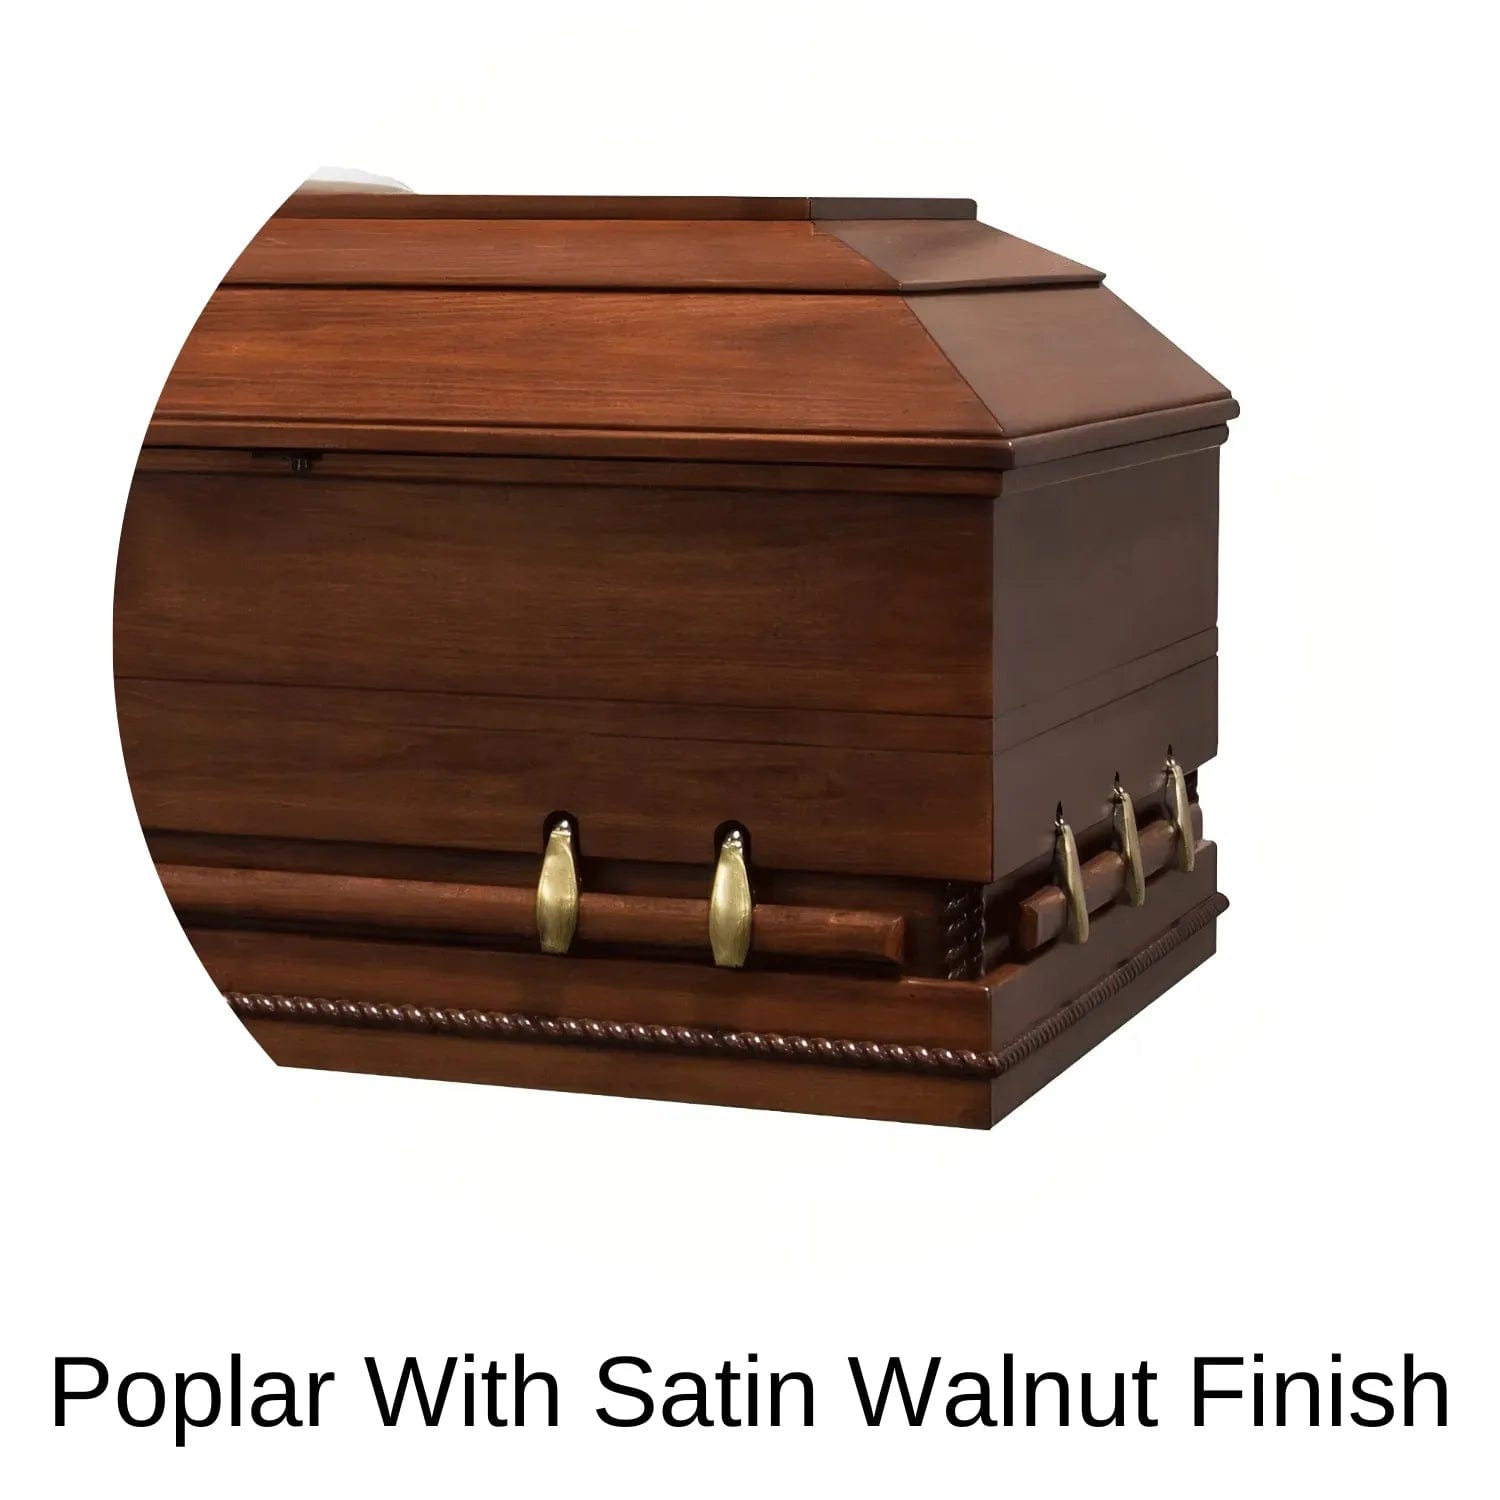 Satin Walnut Finish Of Major XL (Poplar) Series Wood Casket